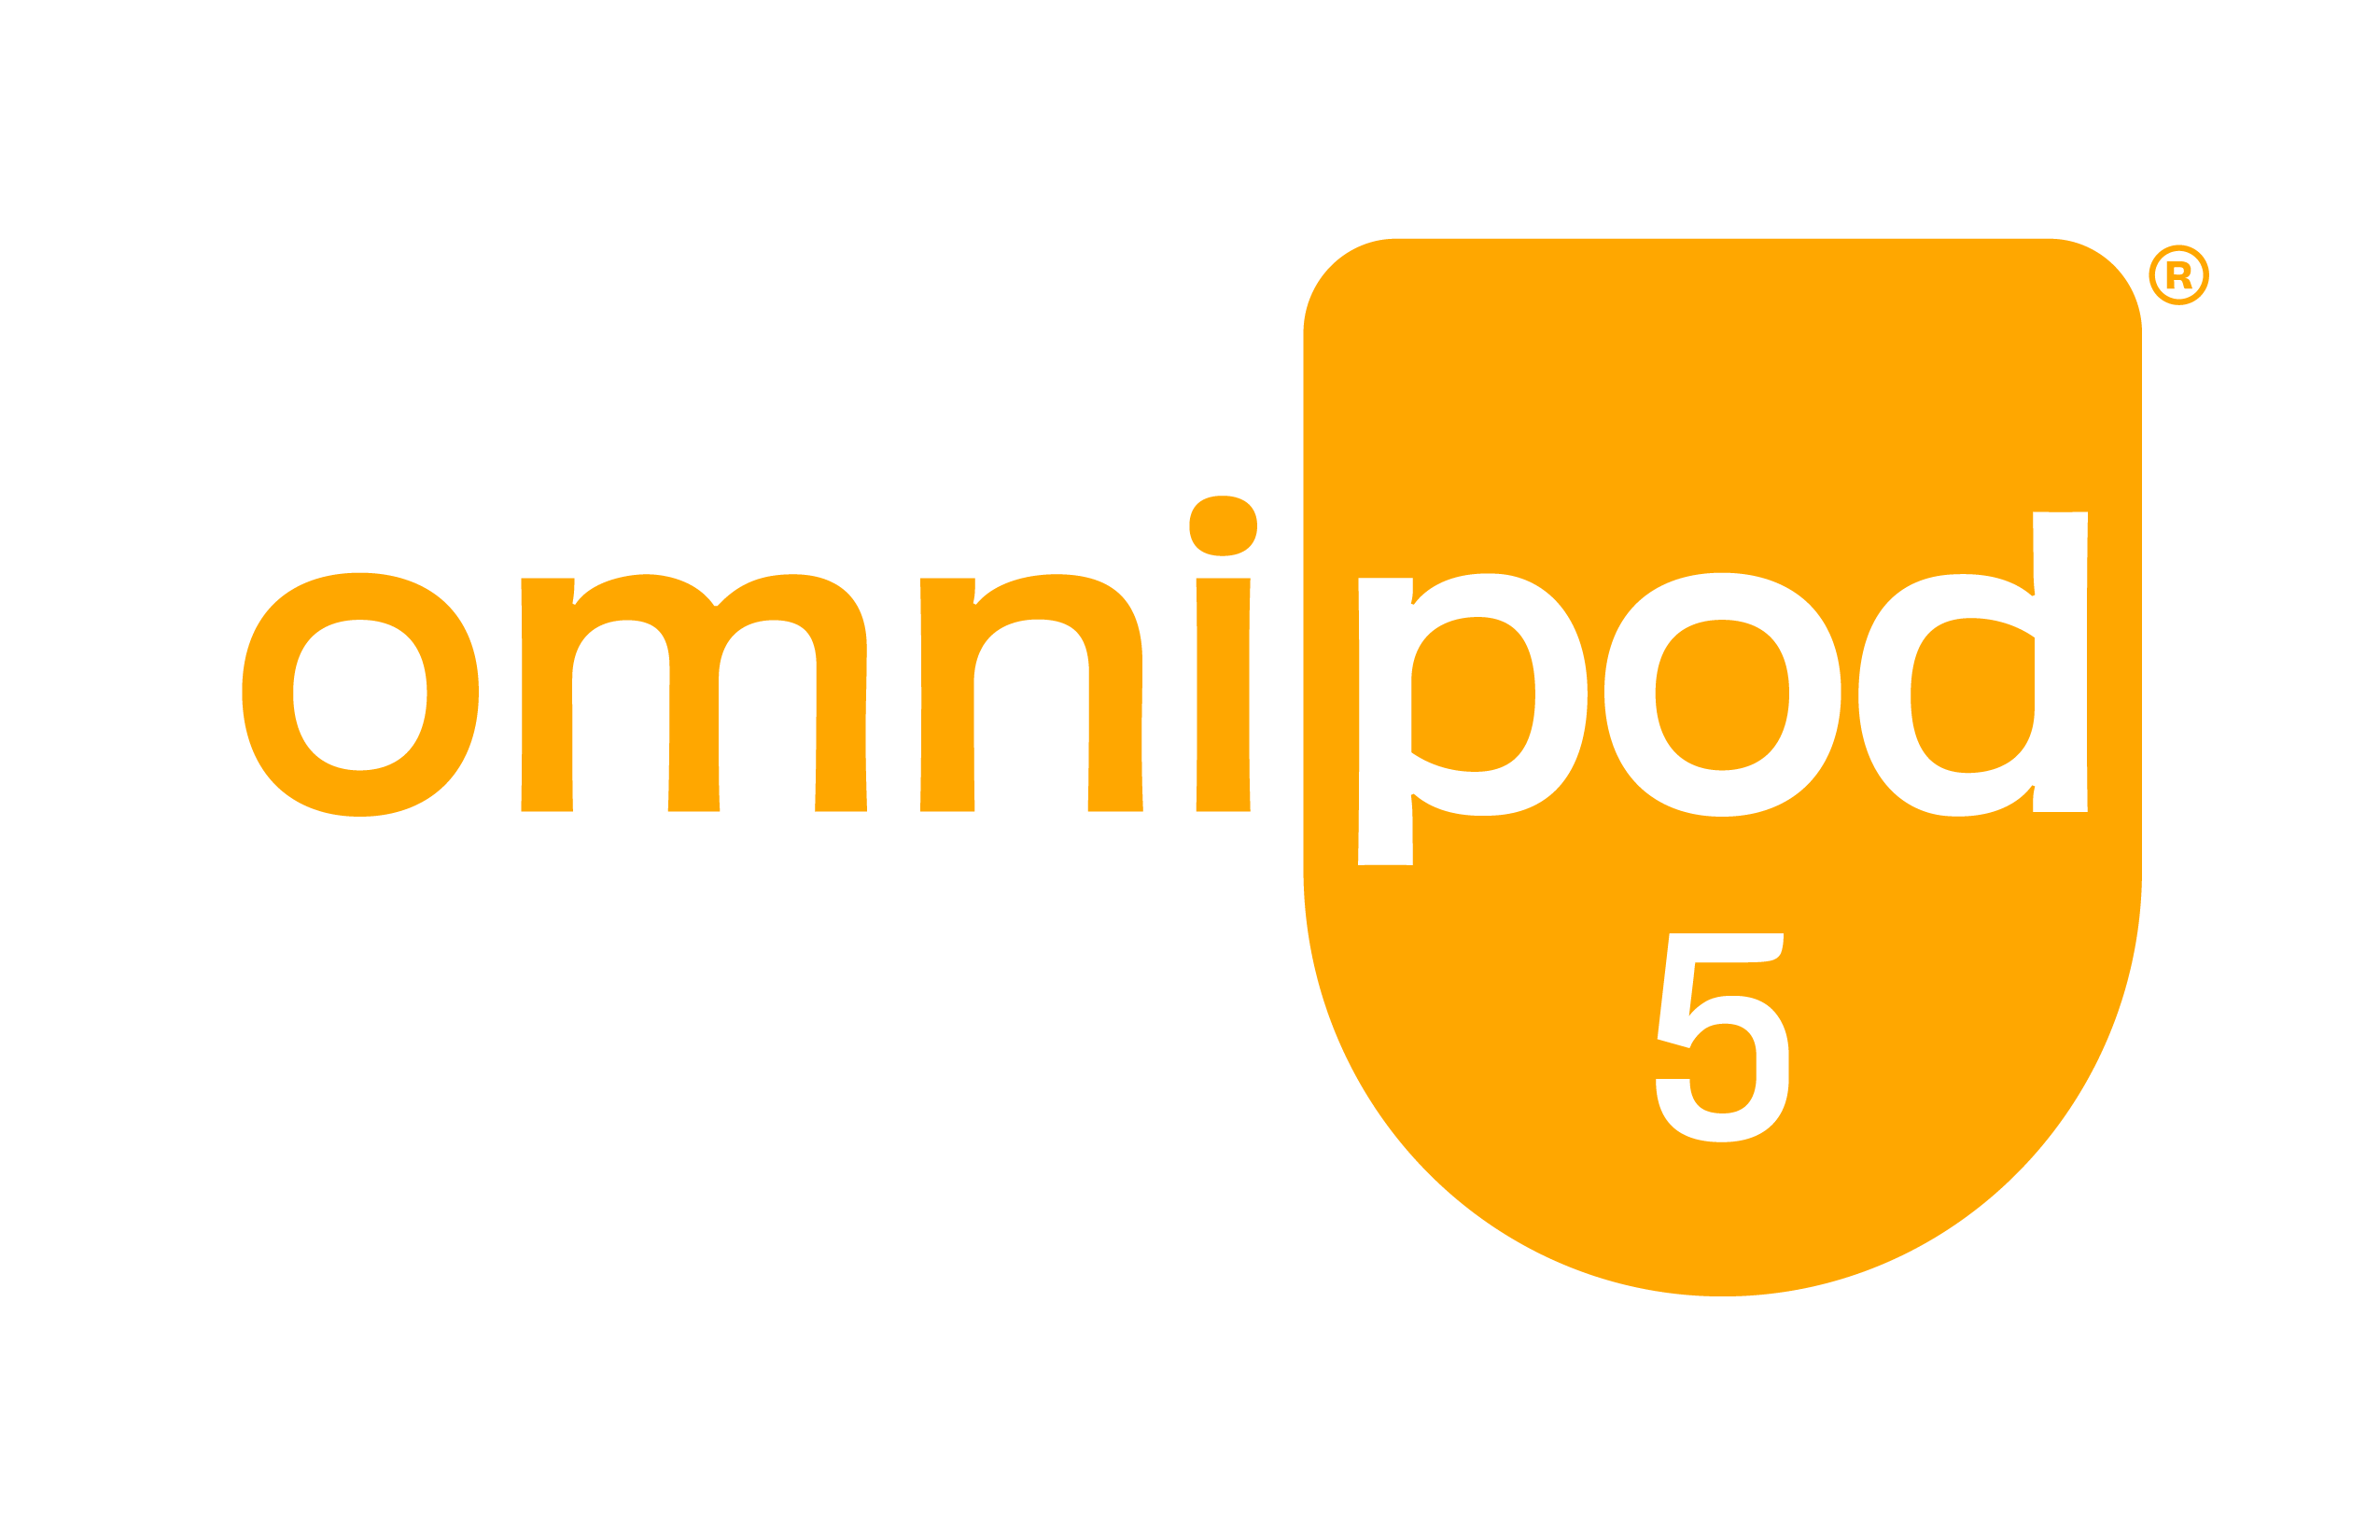 Omnipod 5 logo